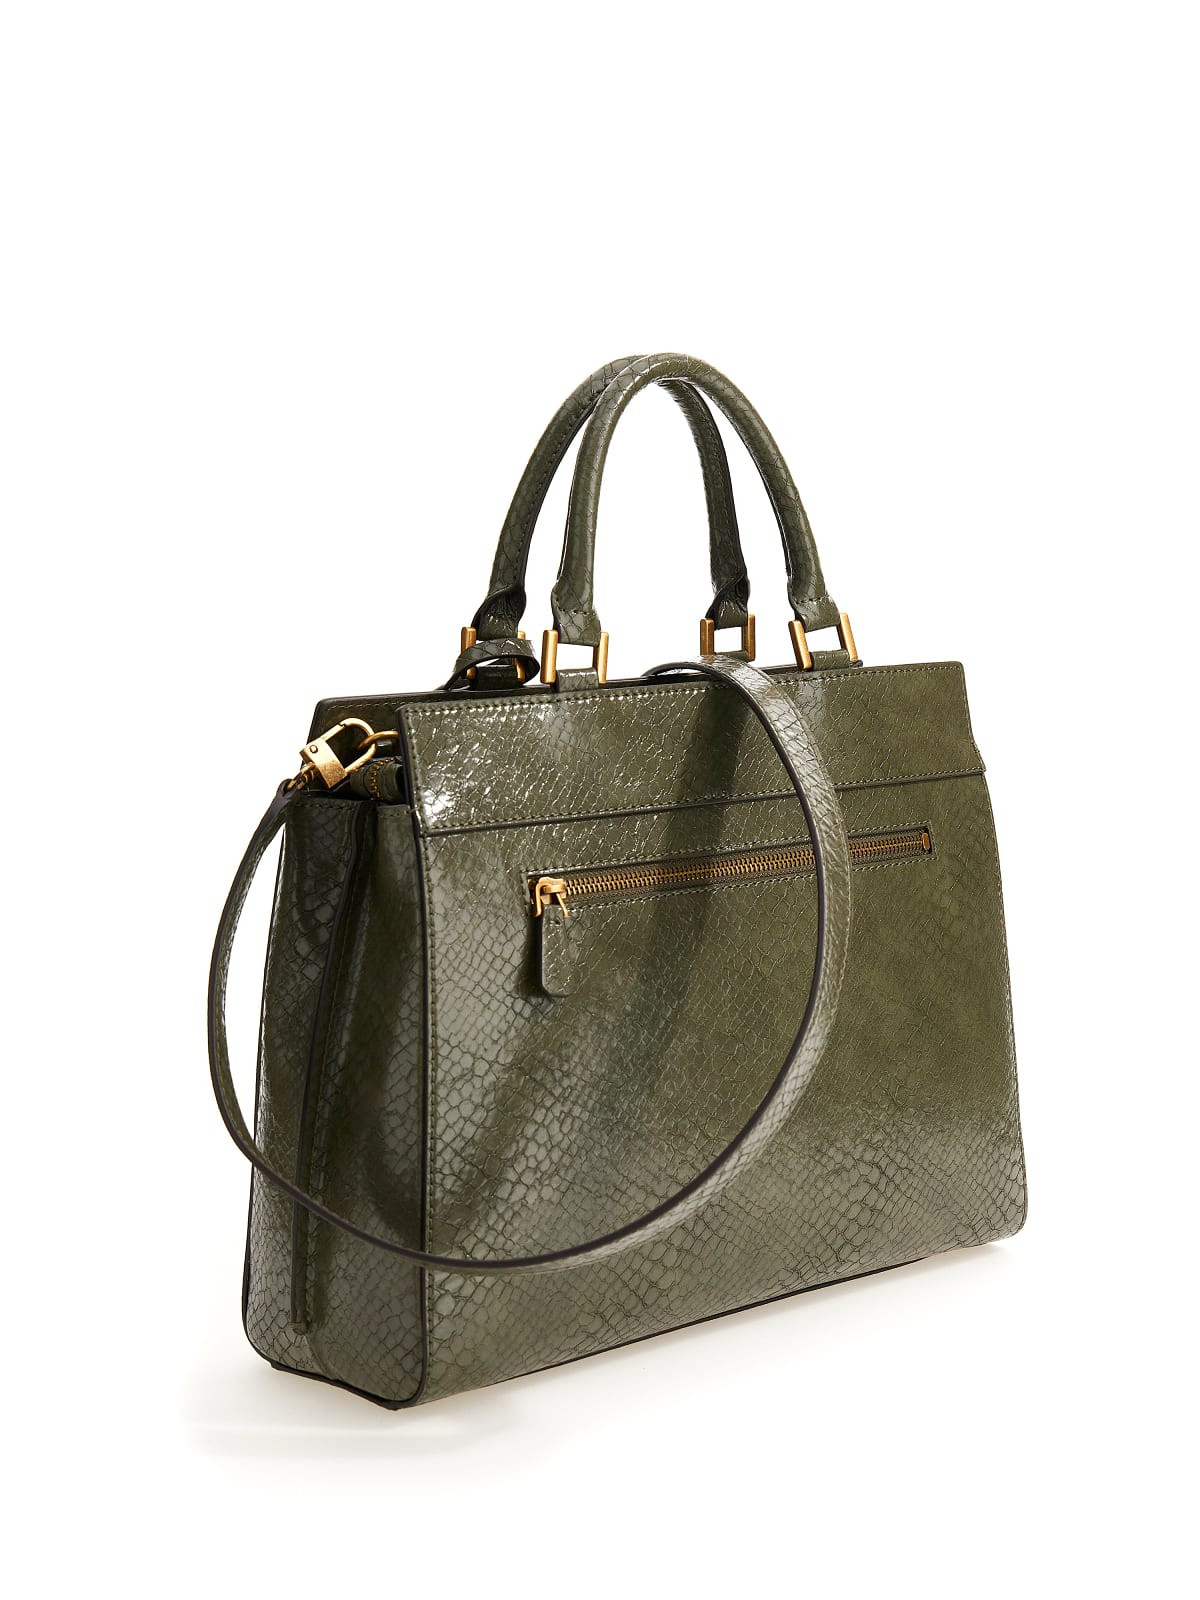 Python effect handbag with shoulder strap, Green, large image number 1